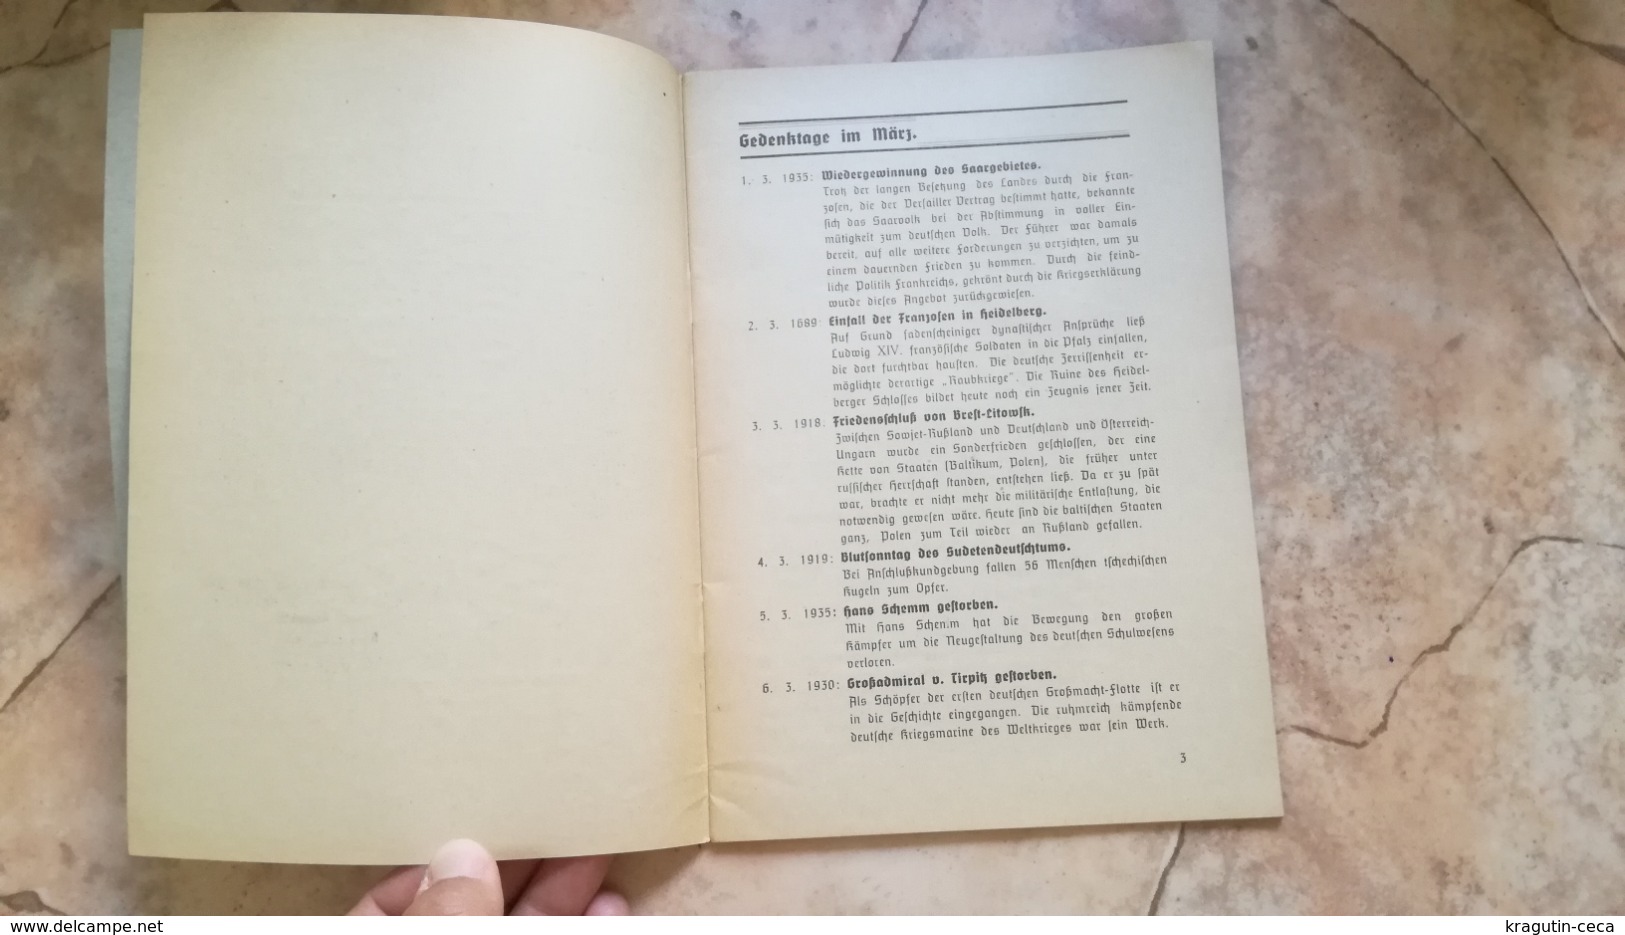 1941 FUHRER DIENST FÜHRER GERMANY GERMAN WEHRMACHT BOOKLET GUIDE SERVICES CALENDAR PROGRAM BOOK BUCHE GEBIET WIEN 27 - Police & Militaire